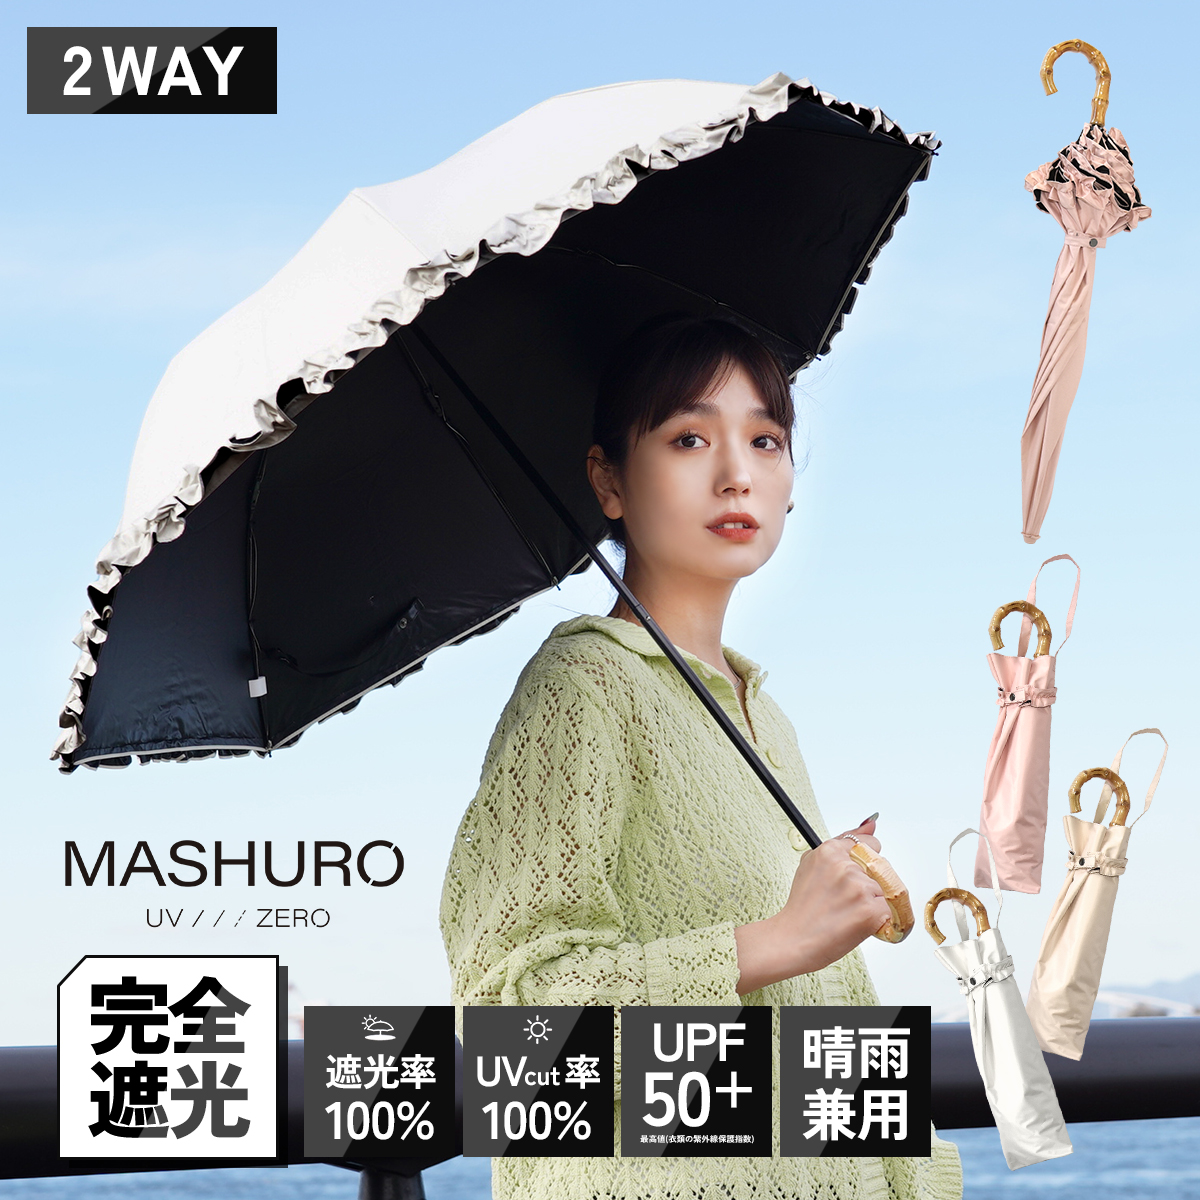 日傘 折りたたみ 軽量 2way 完全遮光 バンブー フリル 母の日 MASHURO 晴雨兼用 遮光率100% 遮熱 かわいい おしゃれ 傘 雨傘 大人 内側 黒 UVカット 長傘